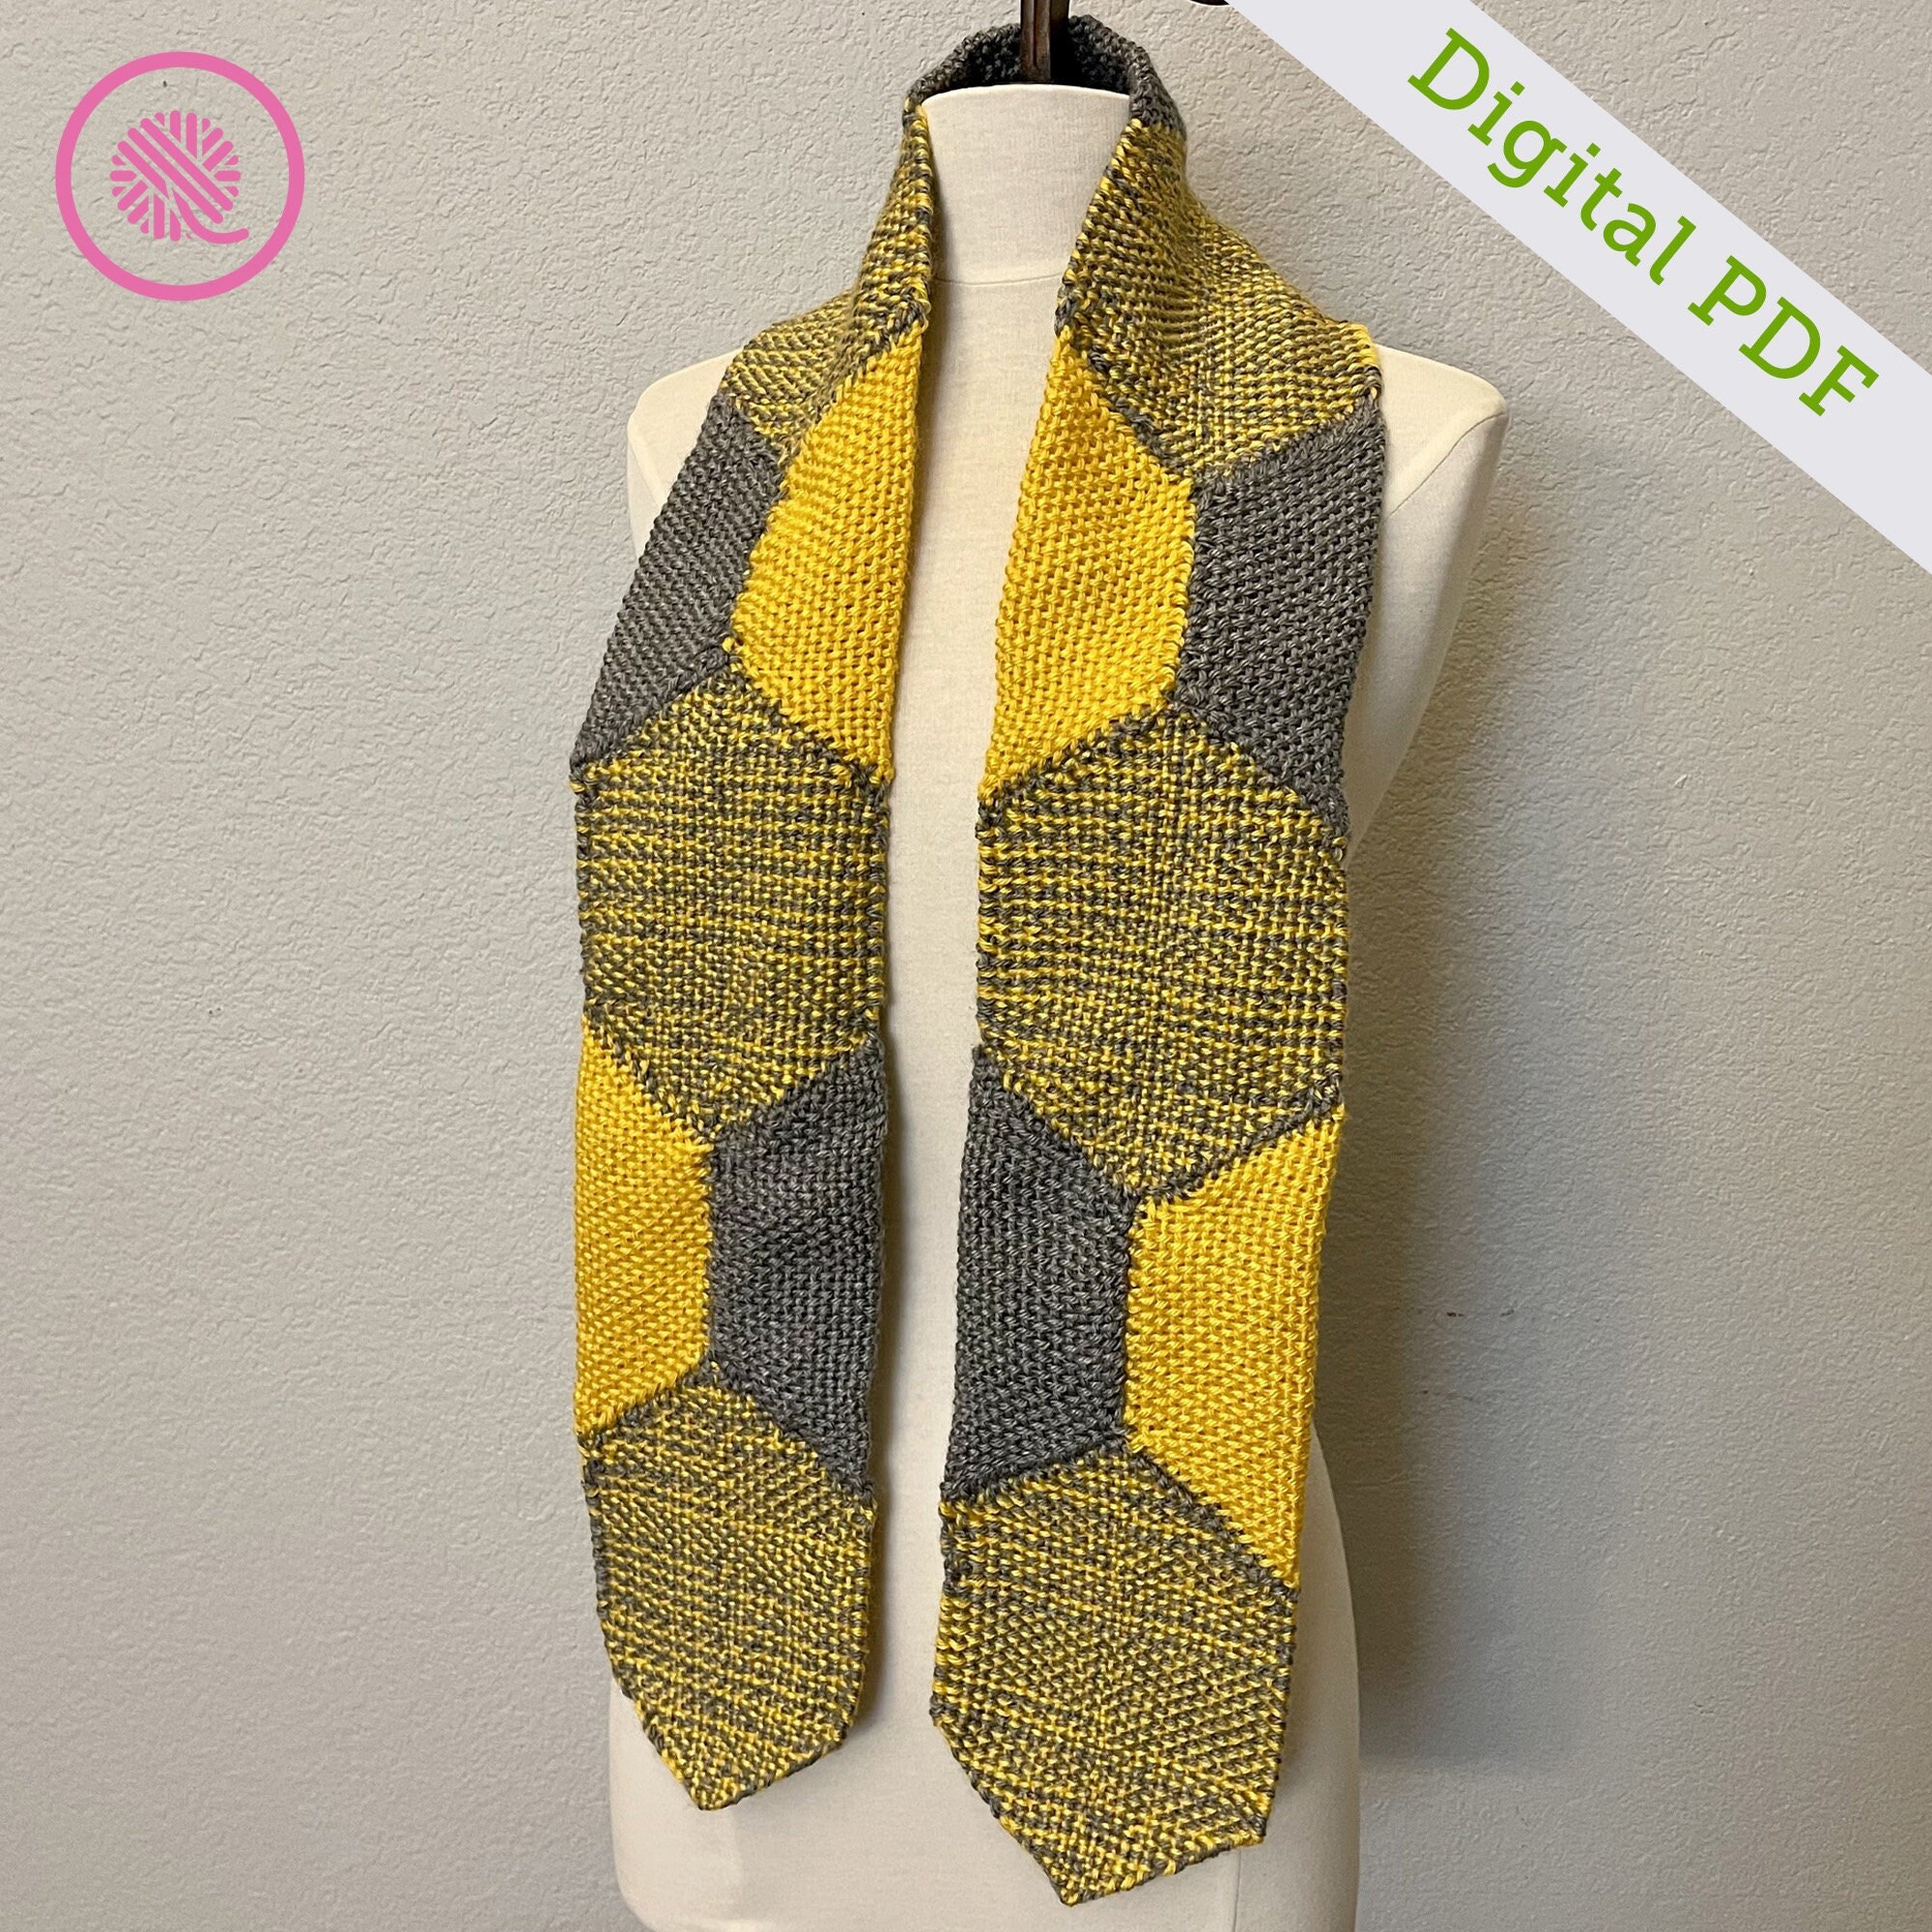 Loom Knit Sisal Scarf pattern by Kristen Mangus